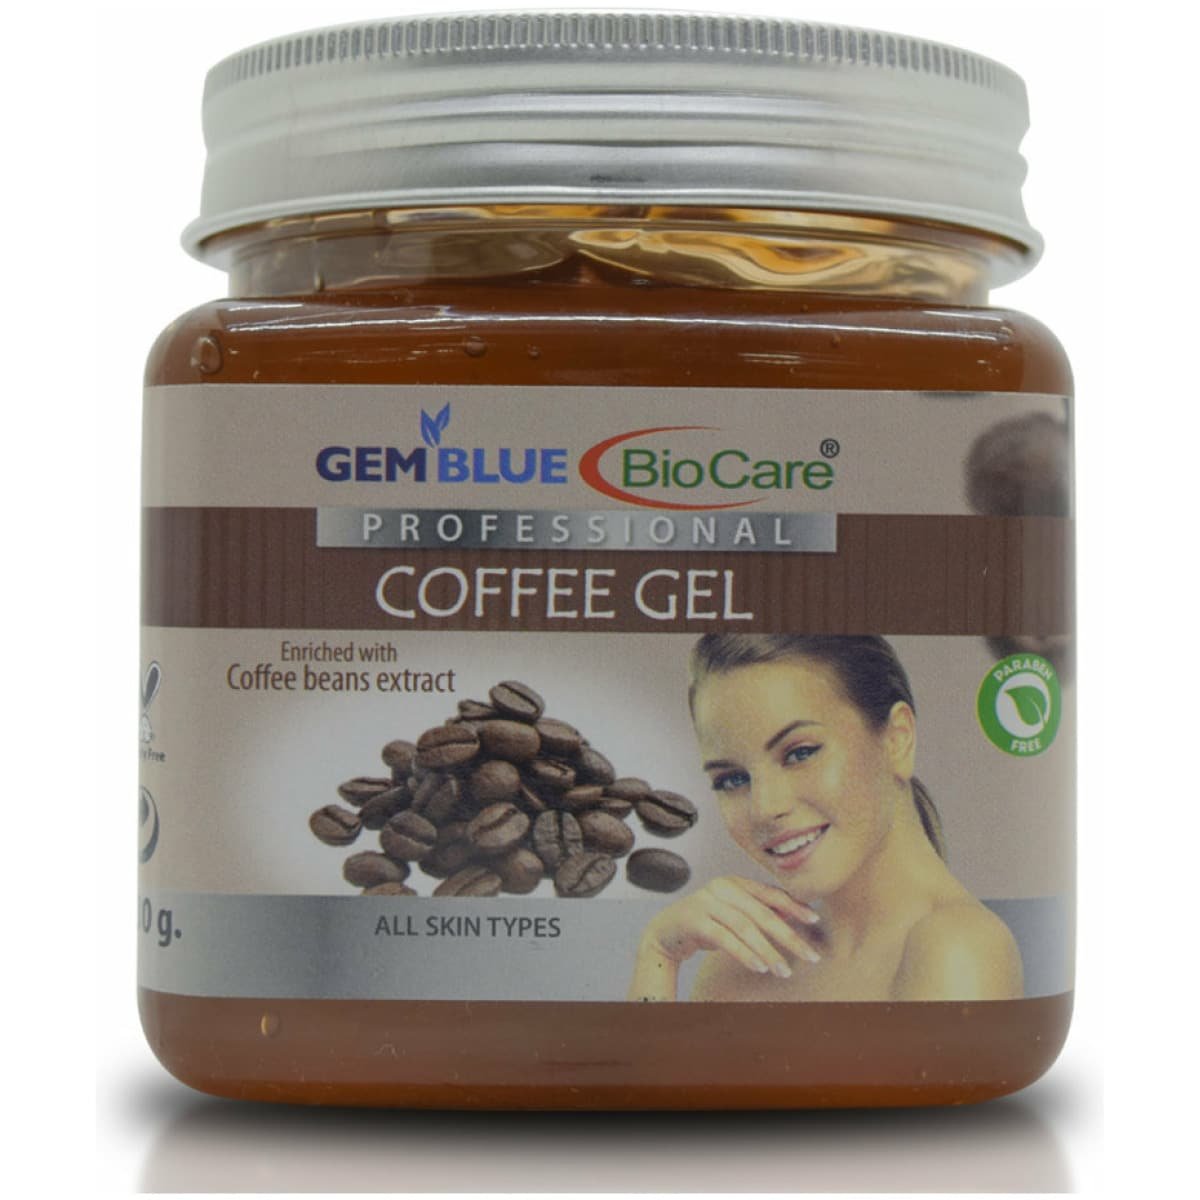 Gemblue Biocare Professional Coffee Gel 330ml